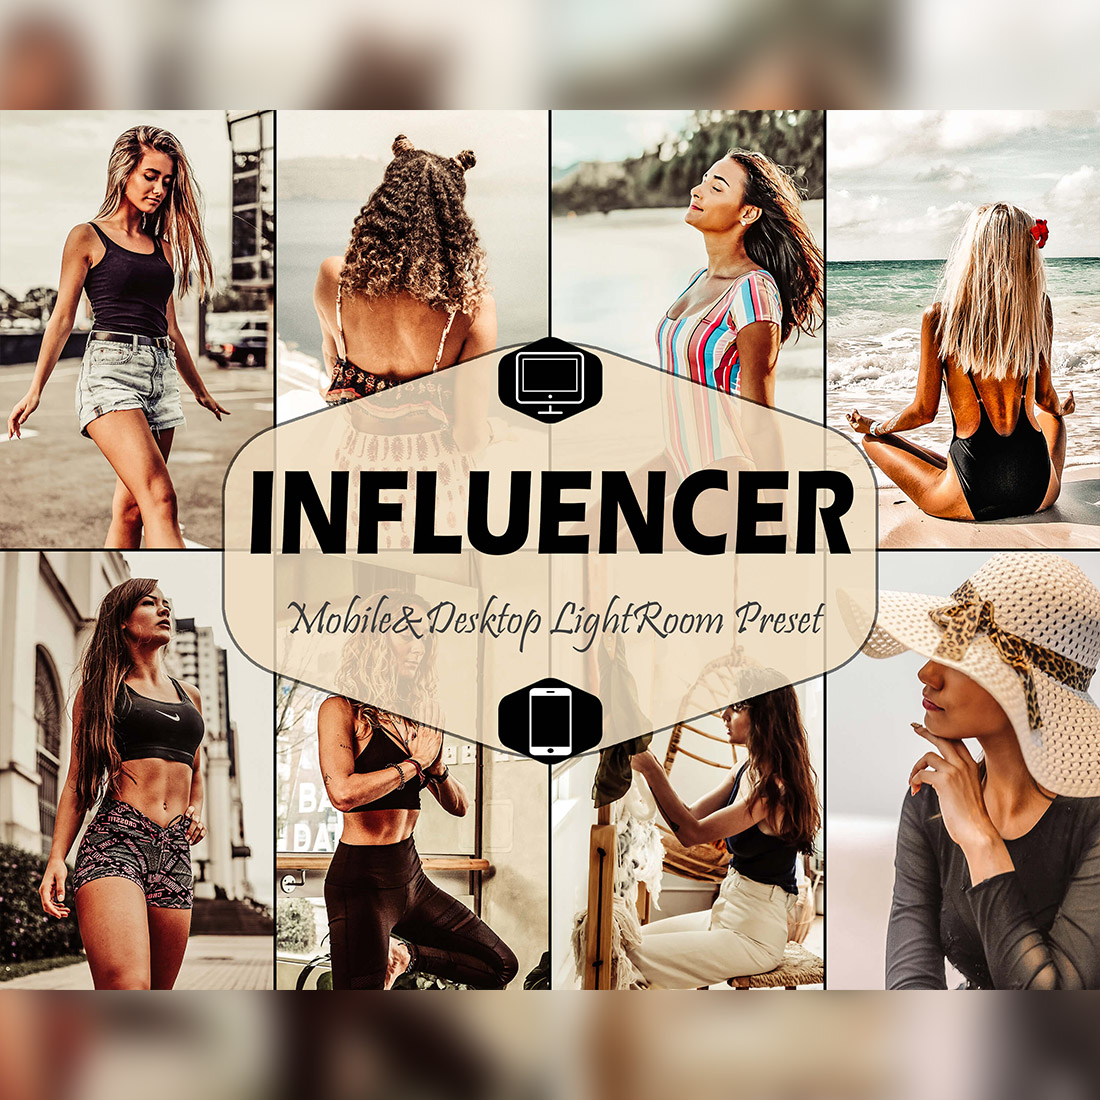 10 Influencer Mobile & Desktop Lightroom Presets, tan LR preset, Portrait Trendy Filter, DNG photographer blogger Lifestyle Instagram Theme cover image.